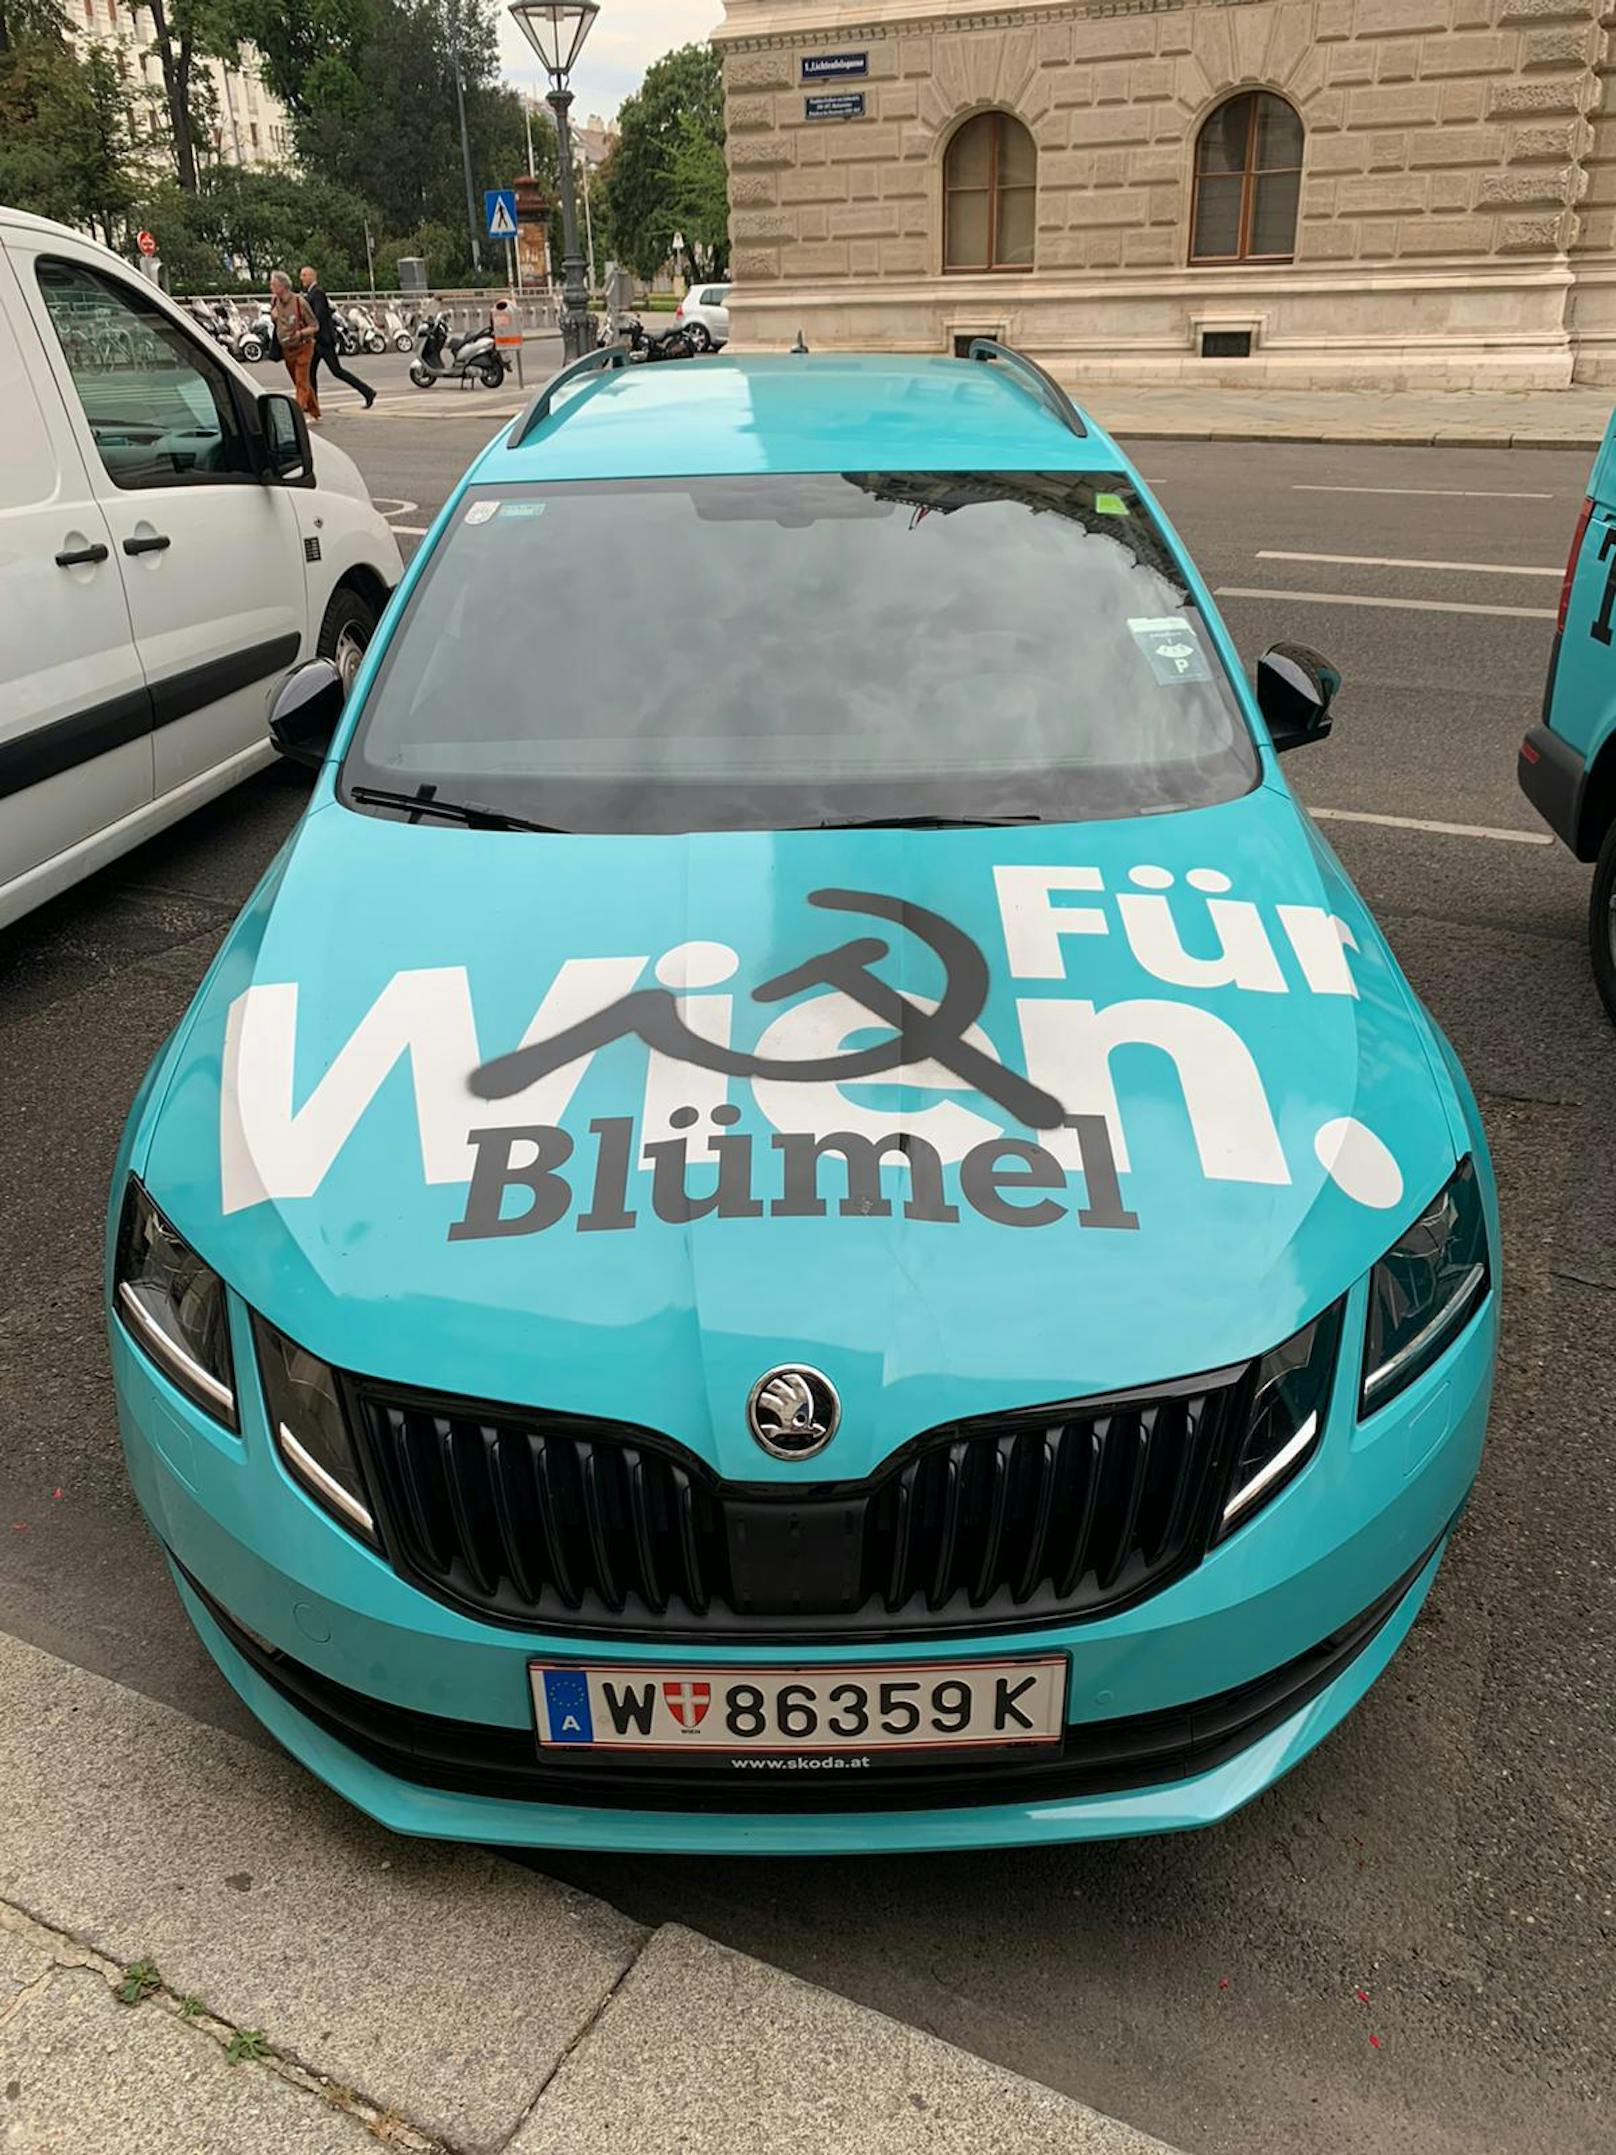 Das Wahlkampf-Auto von der ÖVP Wien wurde besprüht.